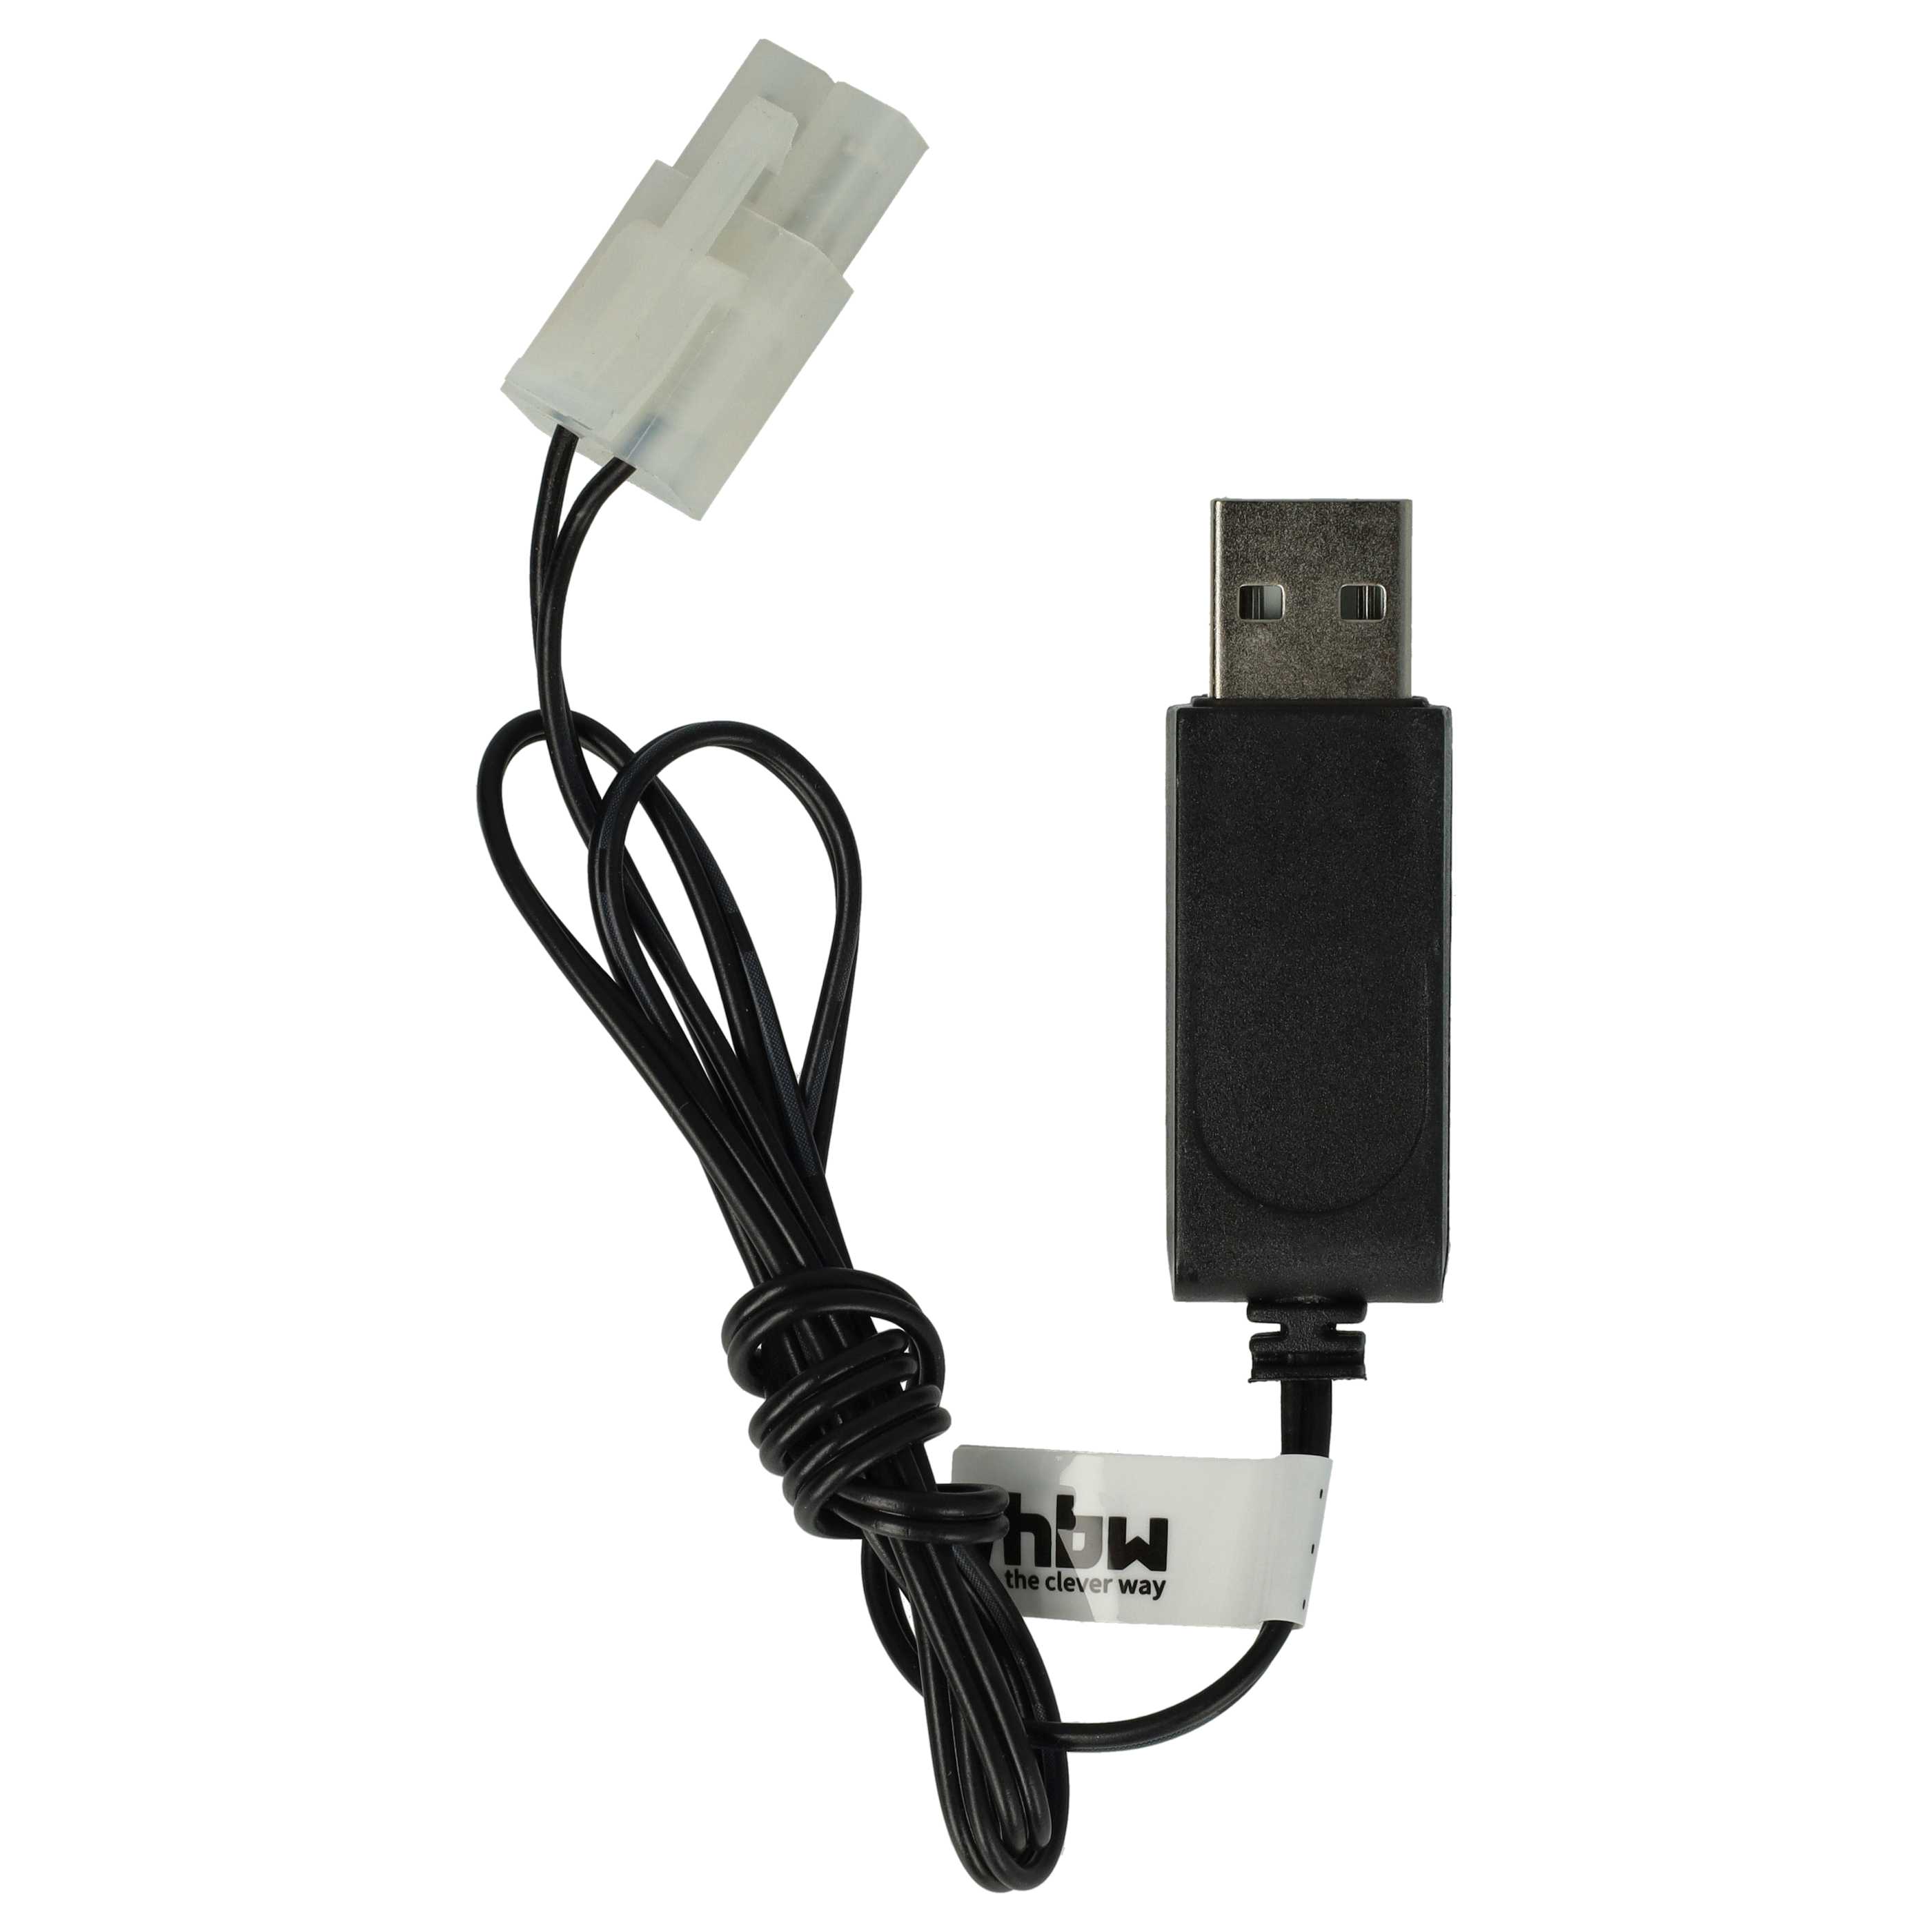 USB-Ladekabel passend für RC-Akkus mit Tamiya-Anschluss, RC-Modellbau Akkupacks - 60cm 7,2V